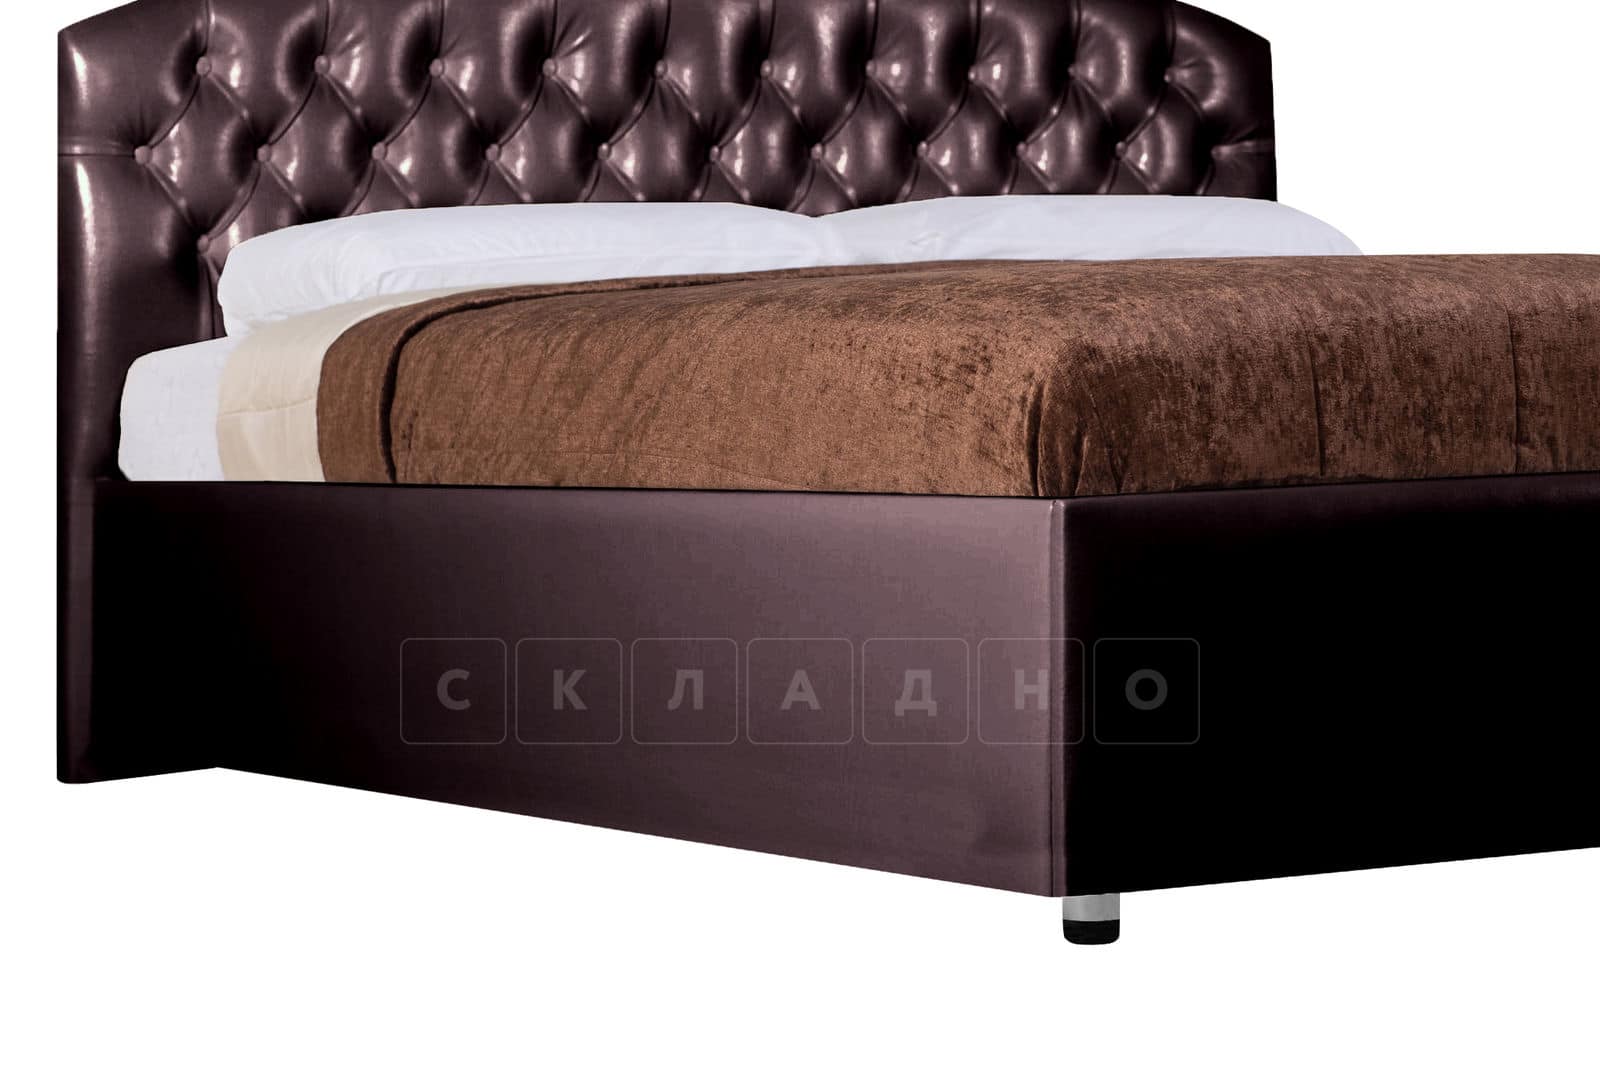 Мягкая кровать Малибу 160 см экокожа шоколадного цвета вариант 1 фото 9 | интернет-магазин Складно